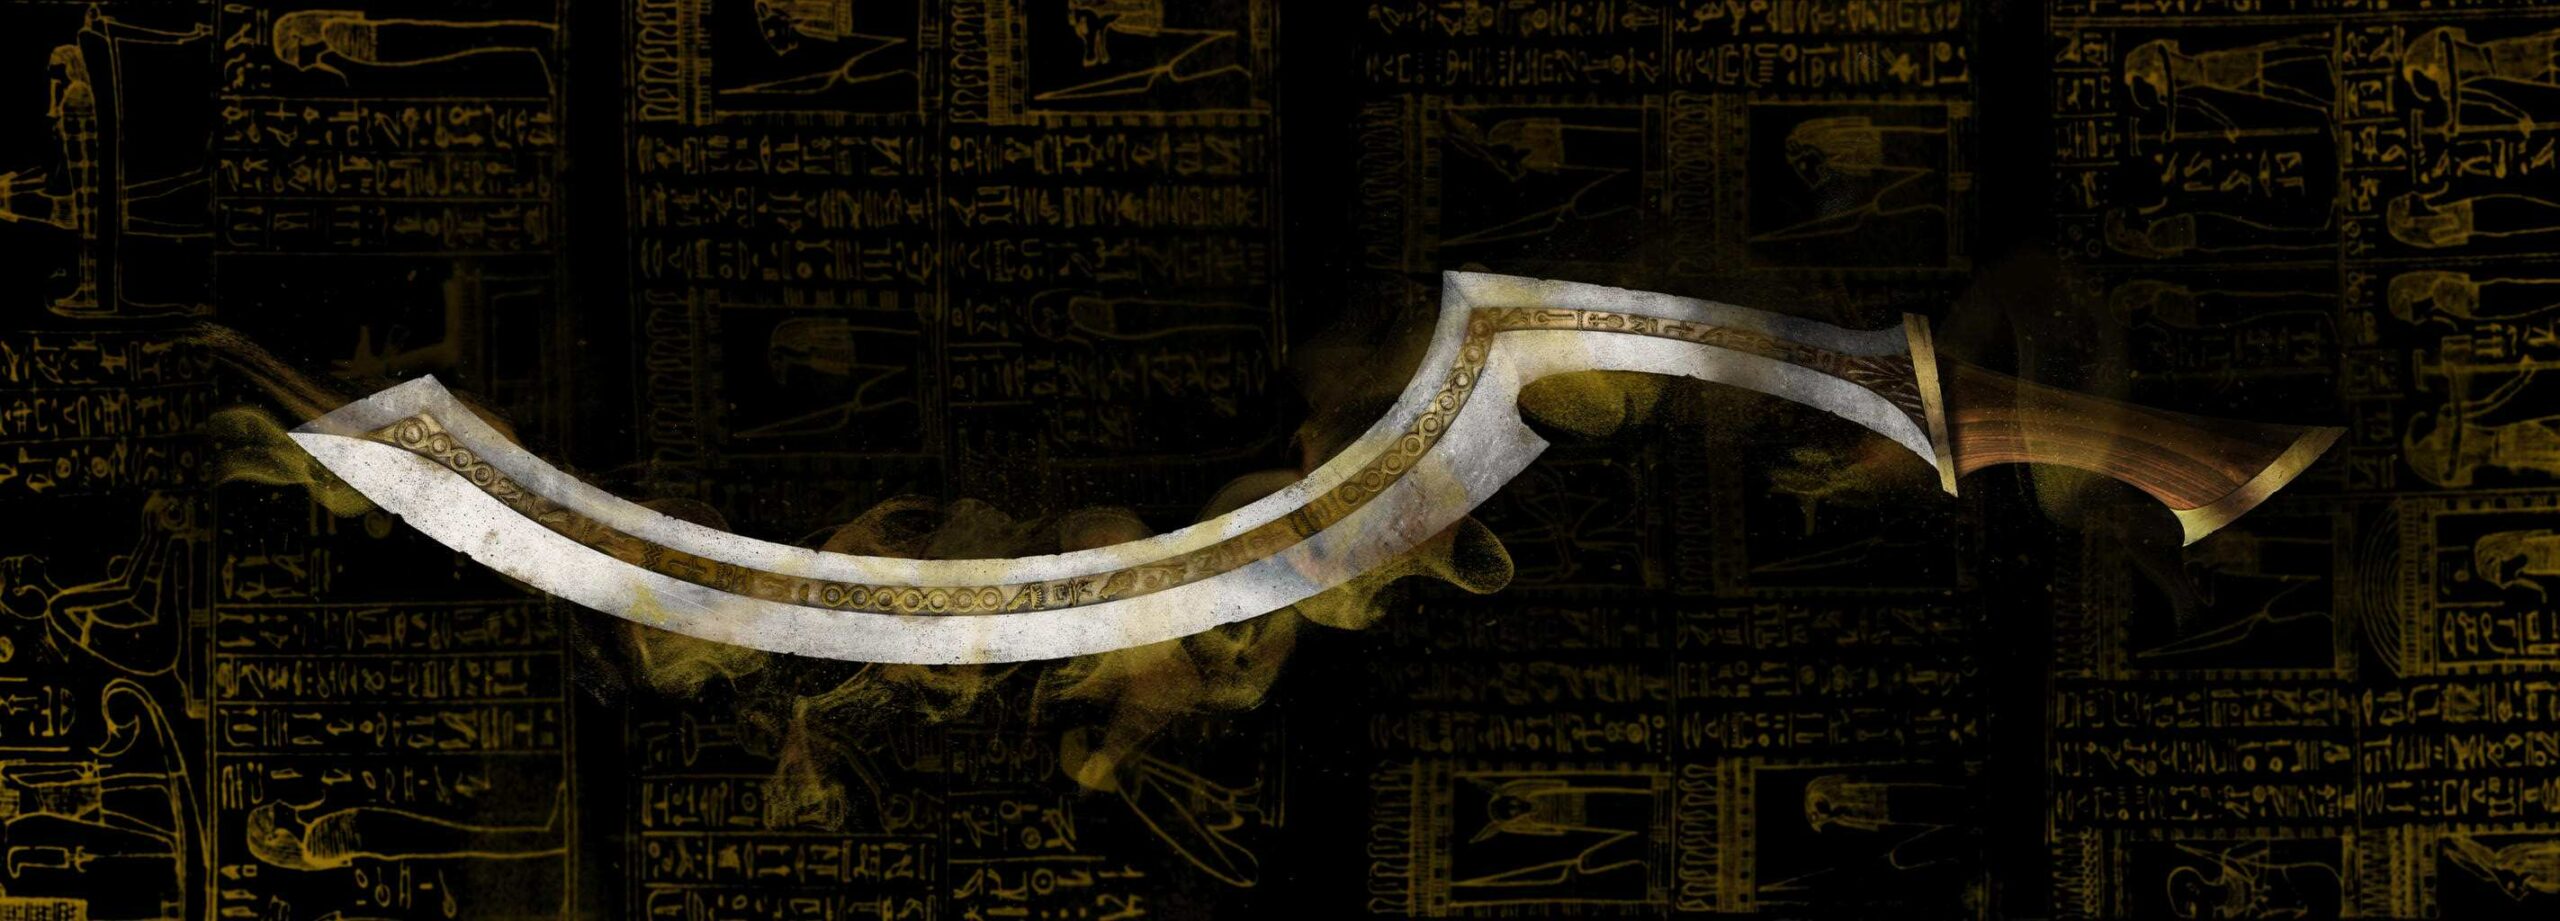 खोपेश तरवार: प्रतिष्ठित हतियार जसले प्राचीन इजिप्ट 2 को इतिहास बनायो